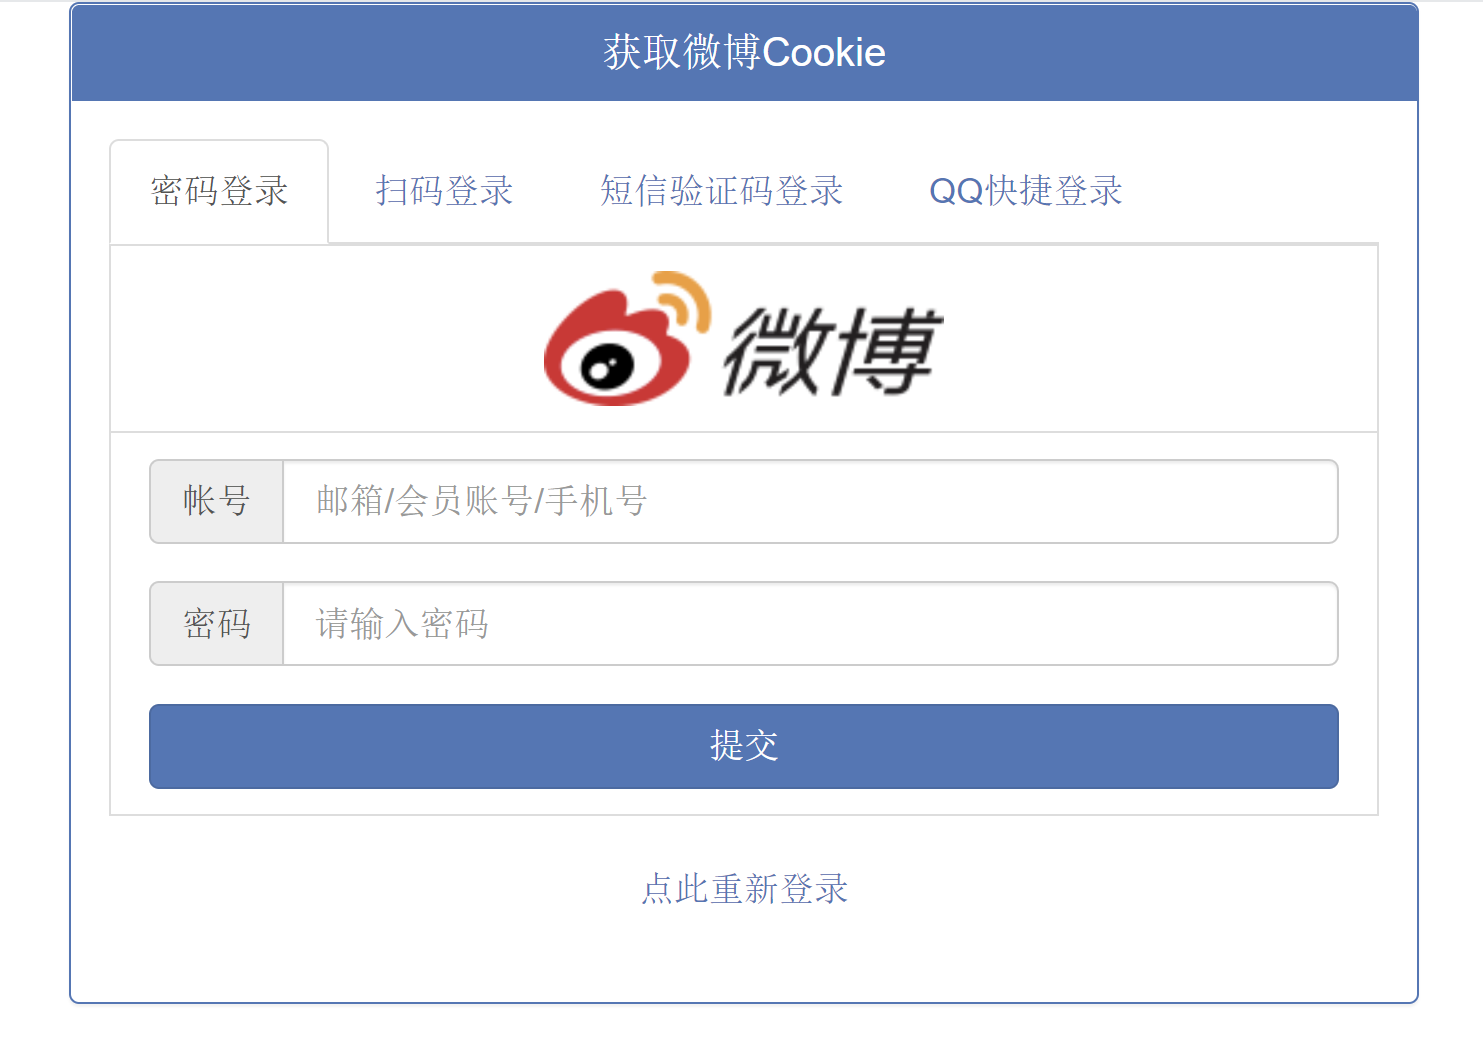 在线获取微博Cookie源码 支持4种登录方式-陌路人博客-第2张图片